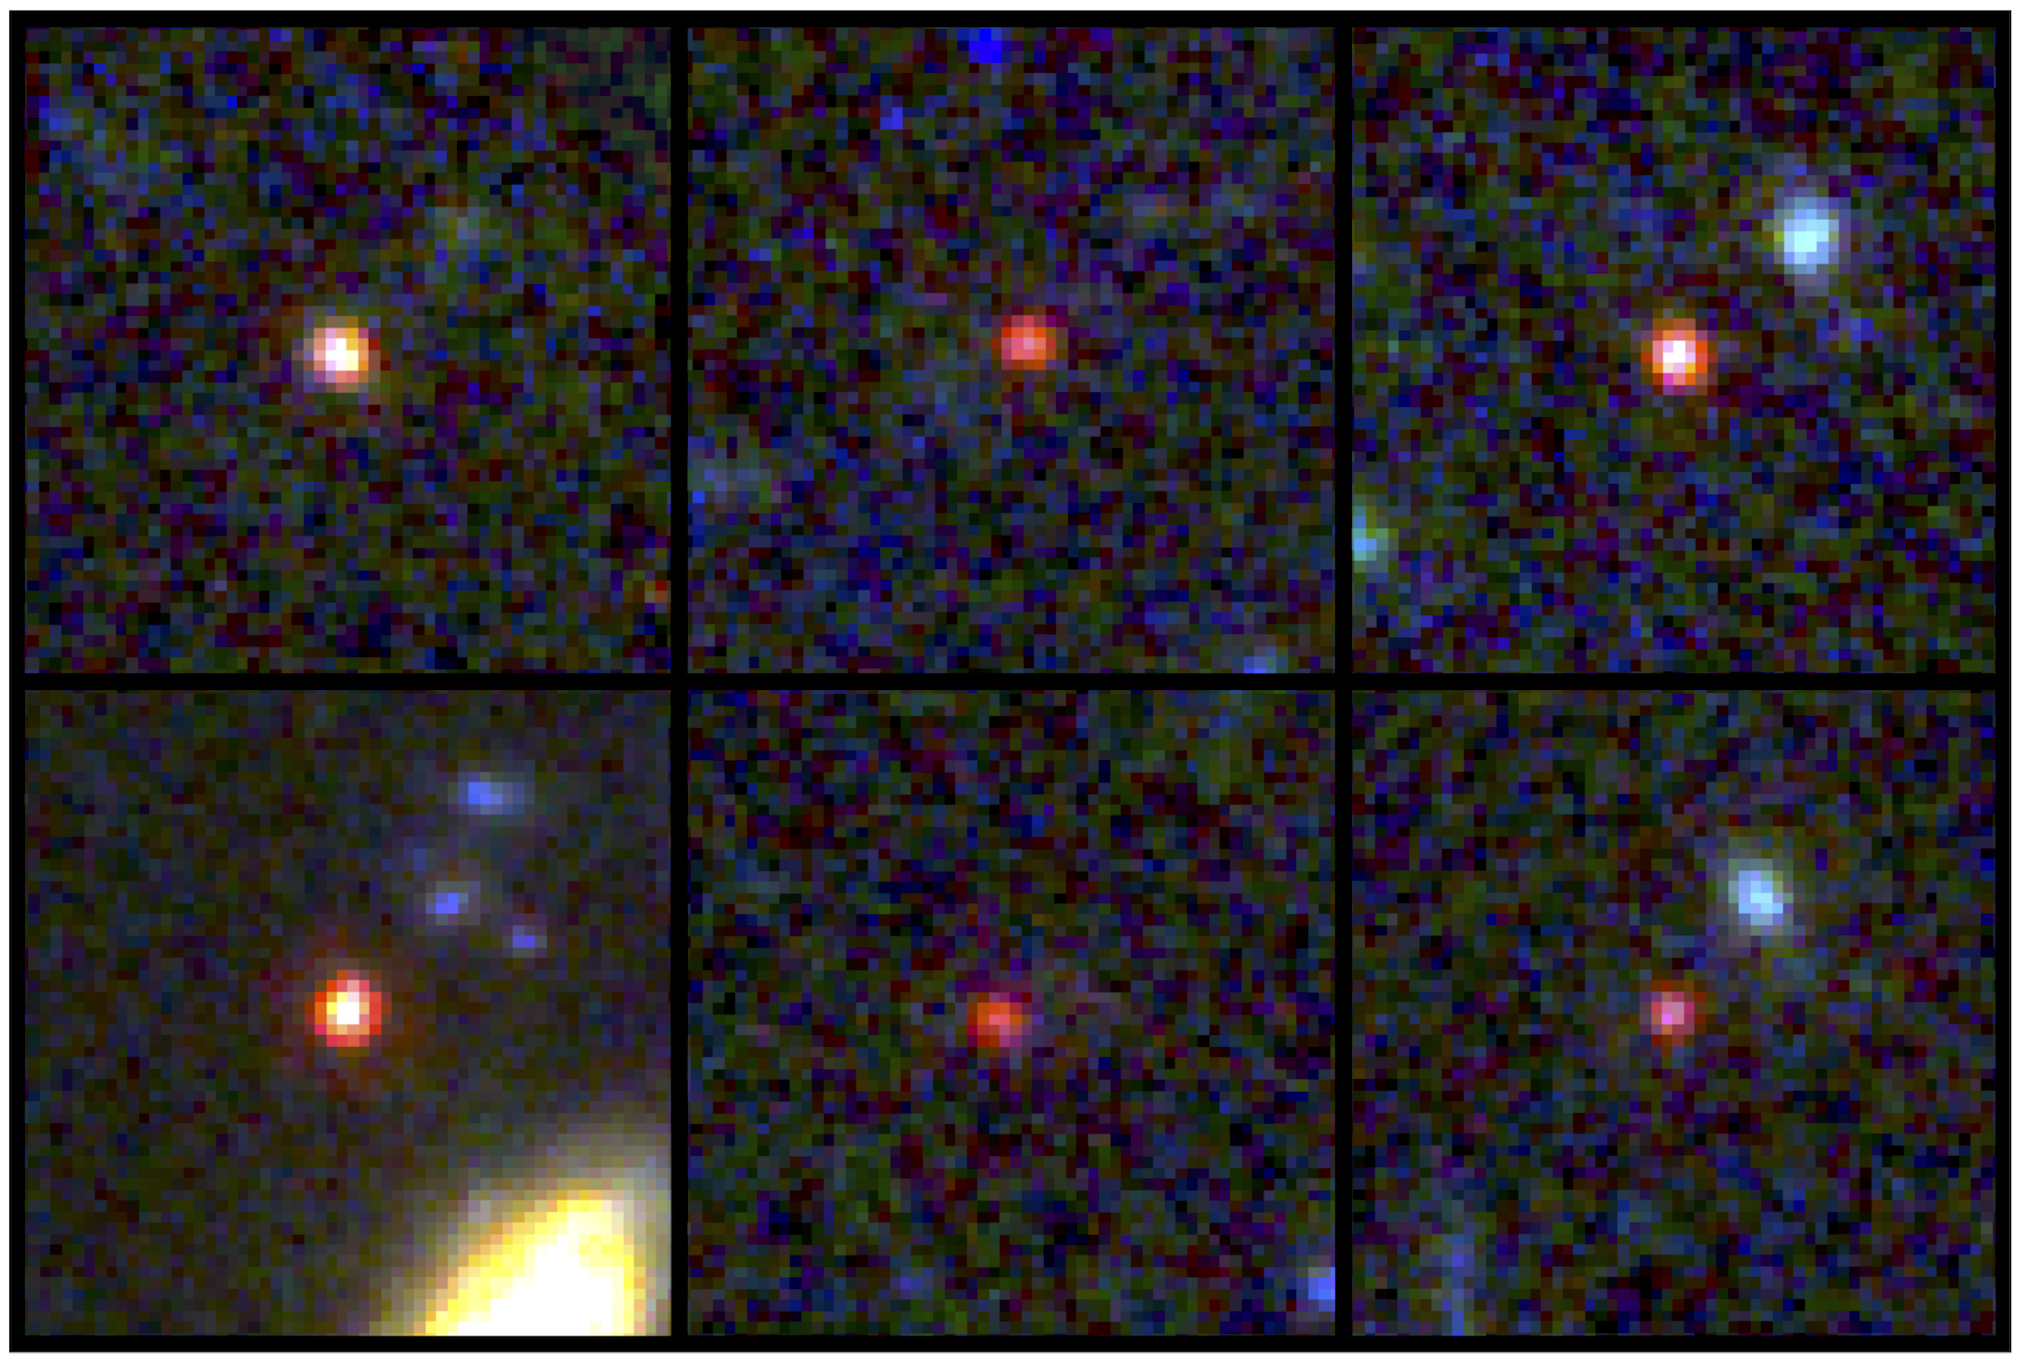 Esta imagen proporcionada por la NASA y la Agencia Espacial Europea muestra imágenes de seis galaxias masivas, vistas unos 500 u 800 millones de años luego del Big Bang. (NASA vía AP)